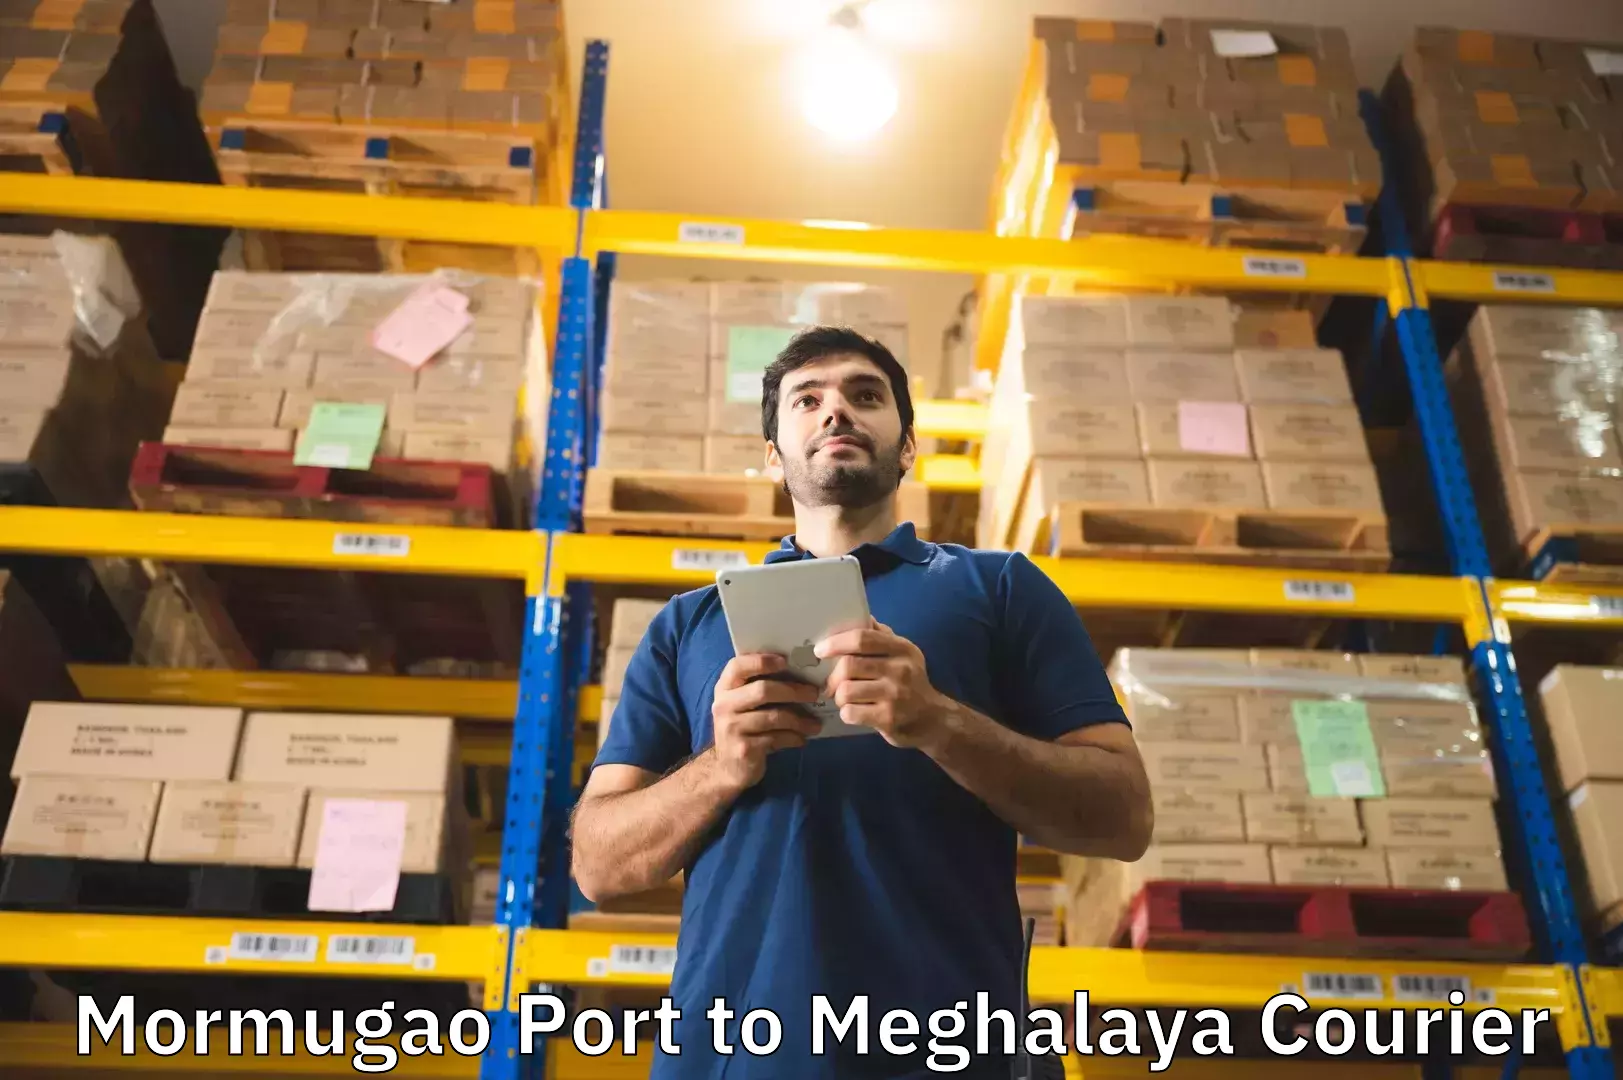 Baggage shipping experts Mormugao Port to Shillong